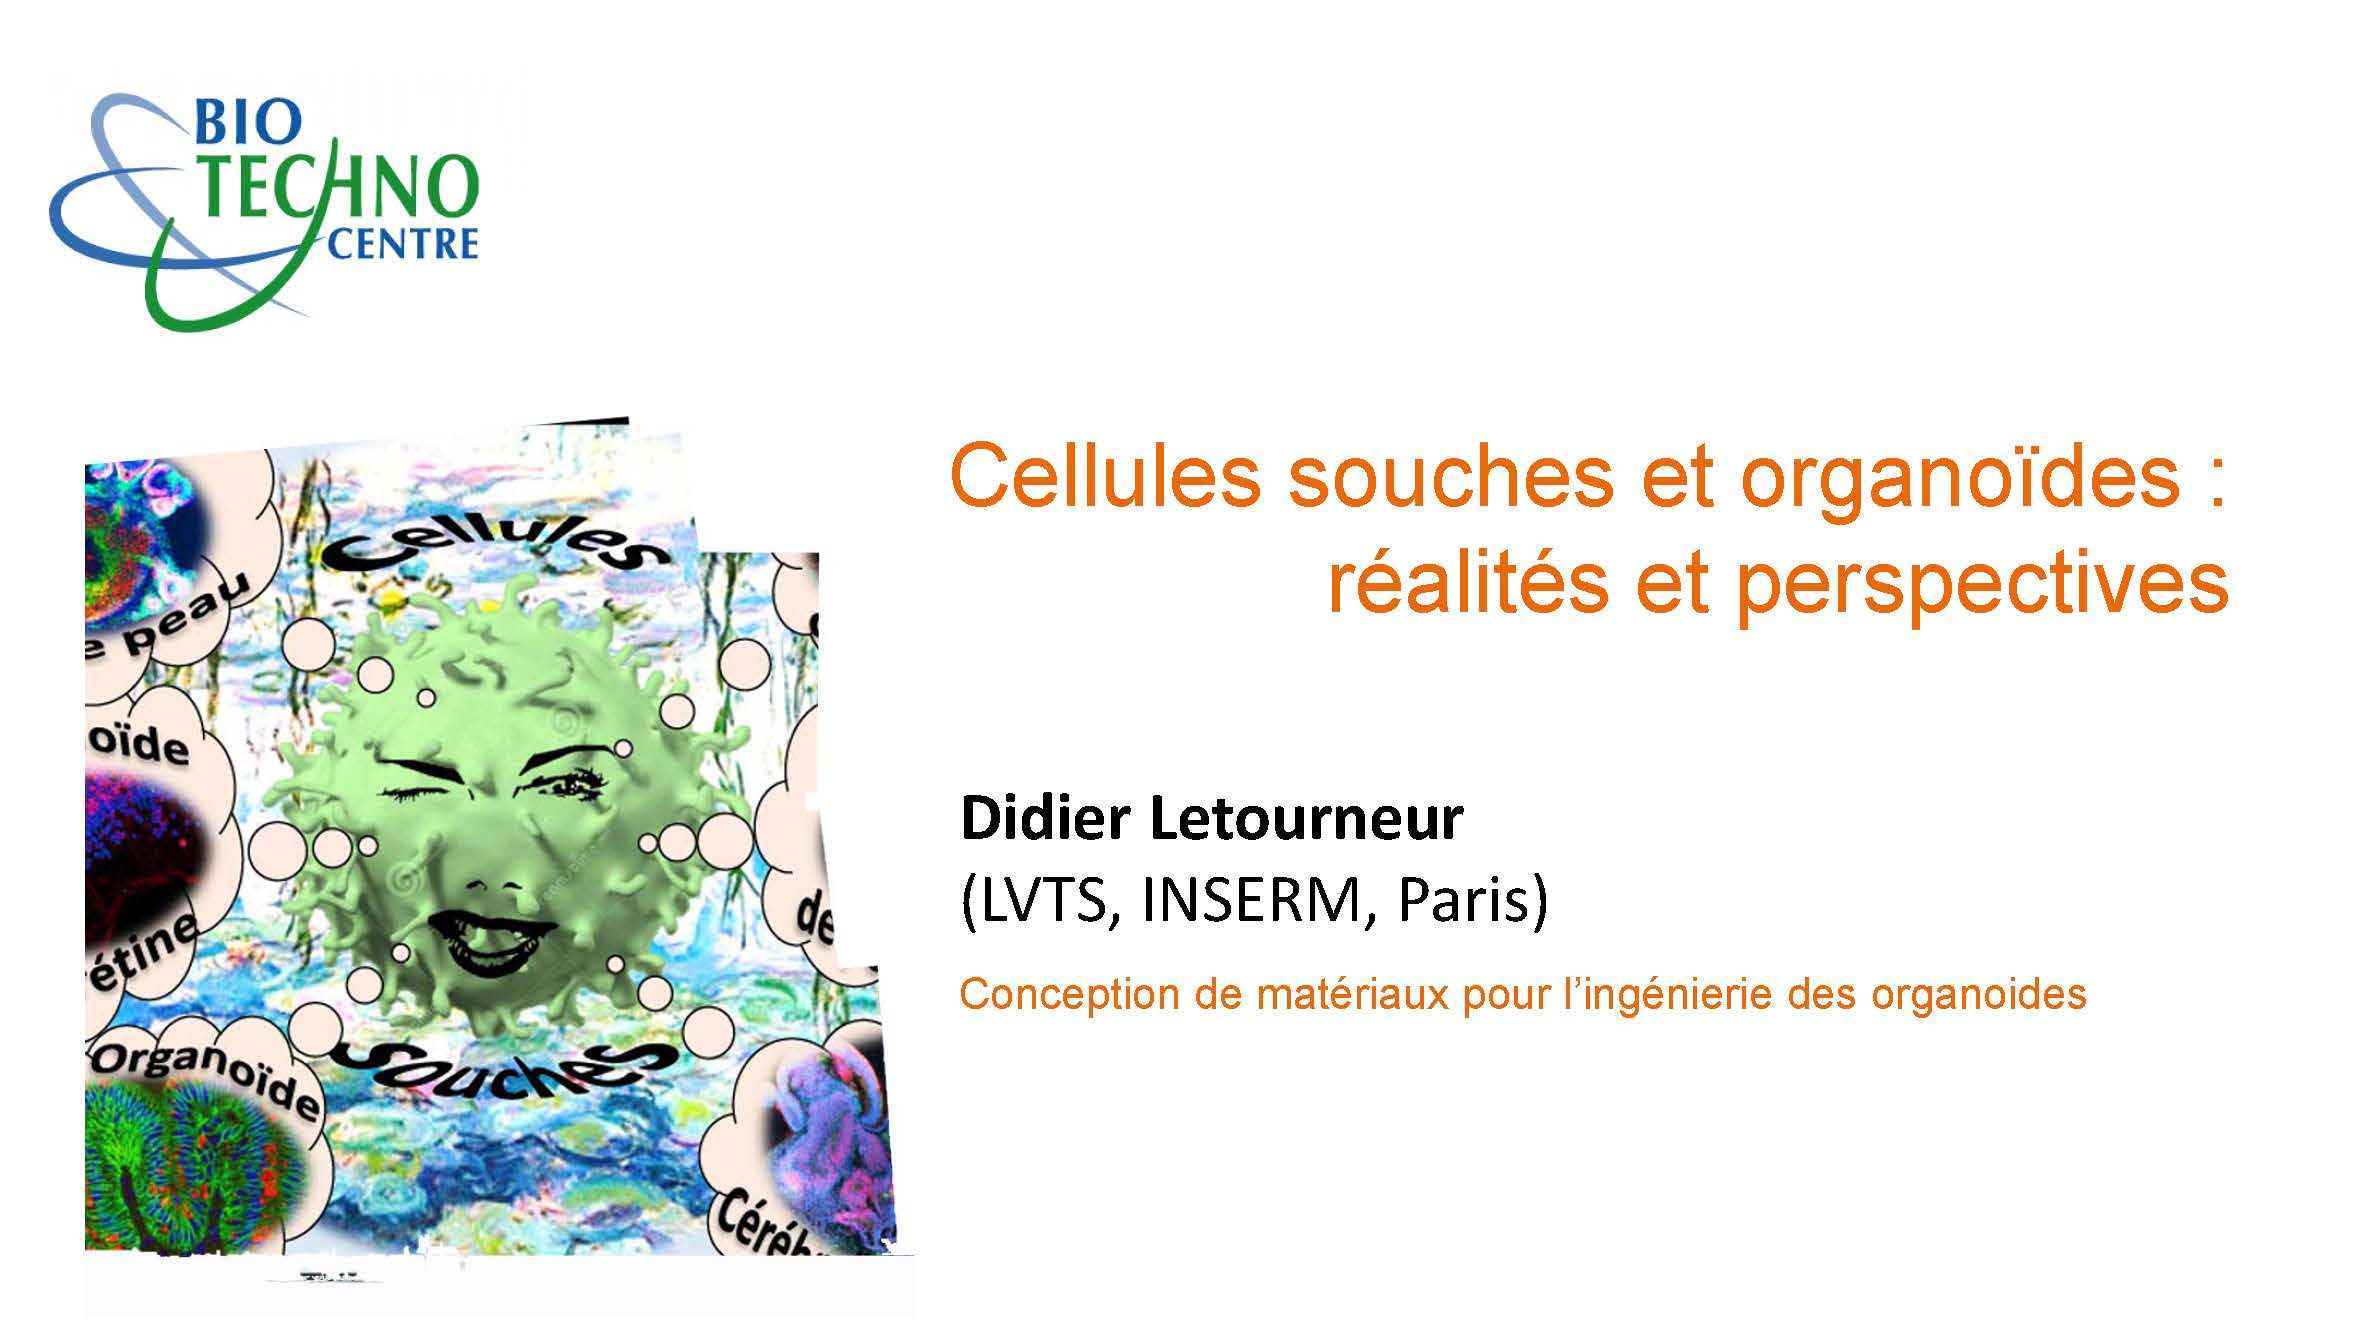 Didier Letourneur - Conception de matériaux pour l’ingénierie des organoides